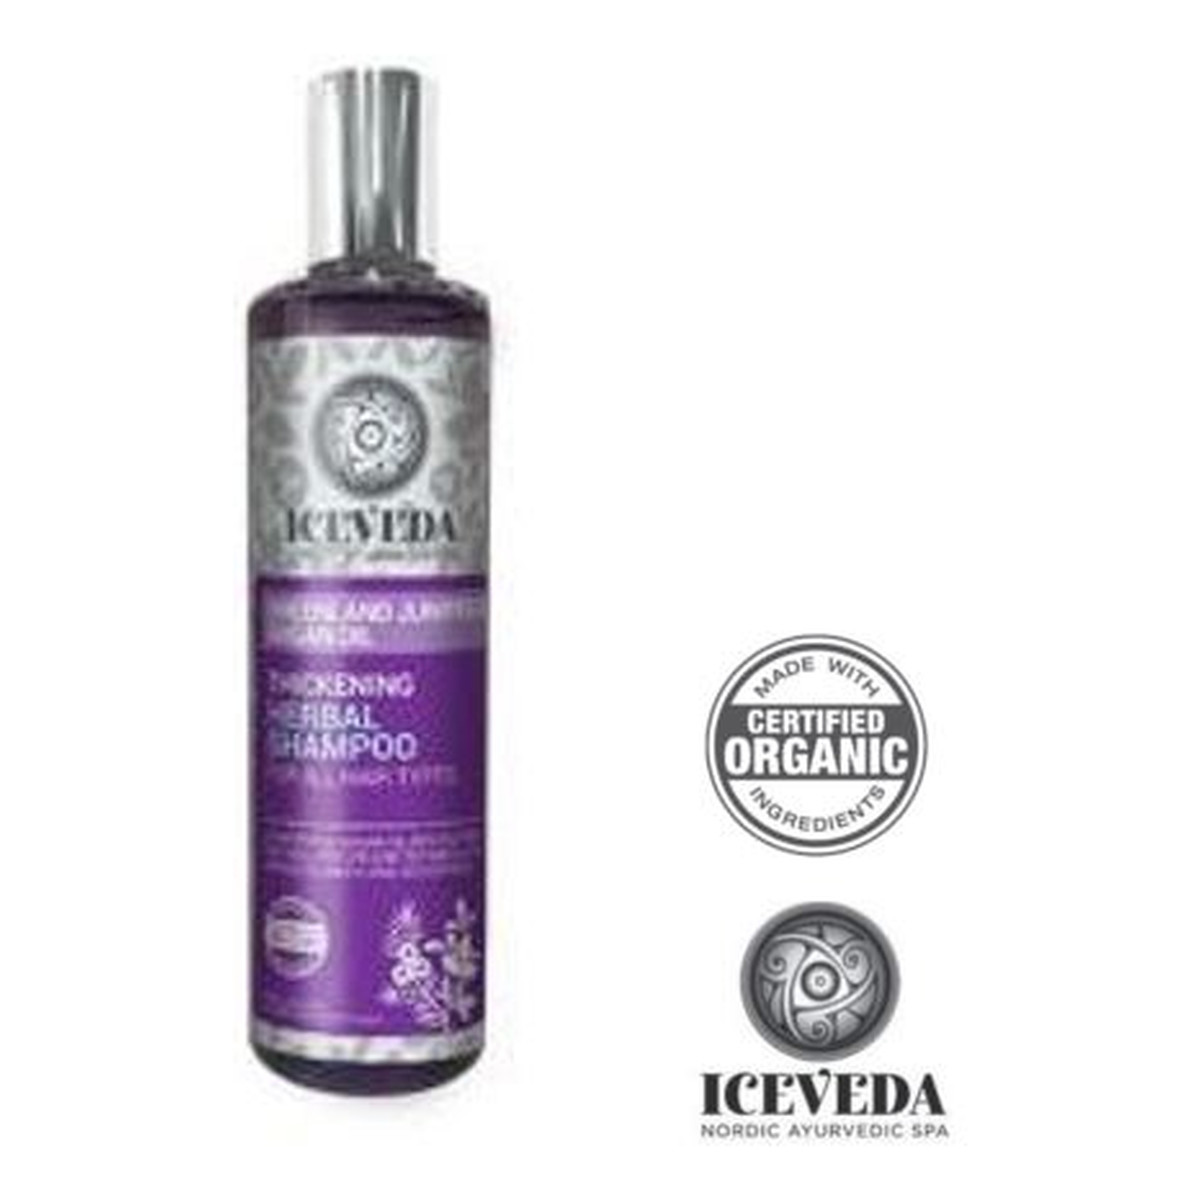 Iceveda Jałowiec grenlandzki & Olej arganowy Zwiększający gęstość włosów ziołowy szampon do wszystkich typów włosów 280ml